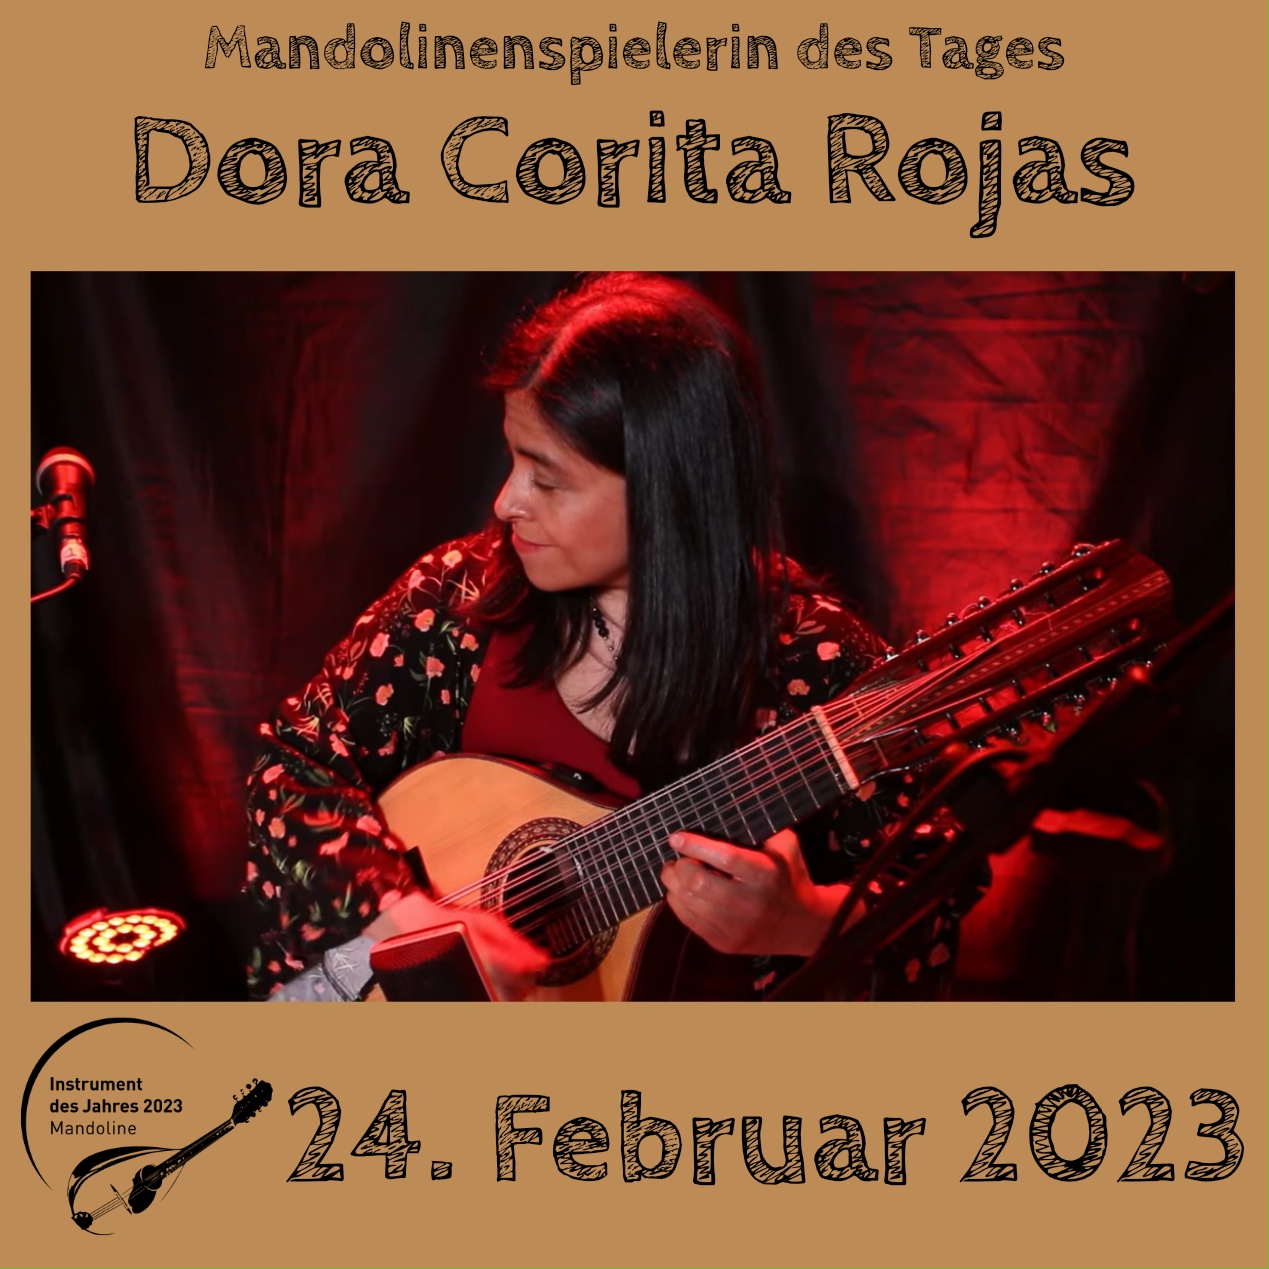 Dora Corita Rojas Mandoline Instrument des Jahres 2023 Mandolinenspielerin des Tages